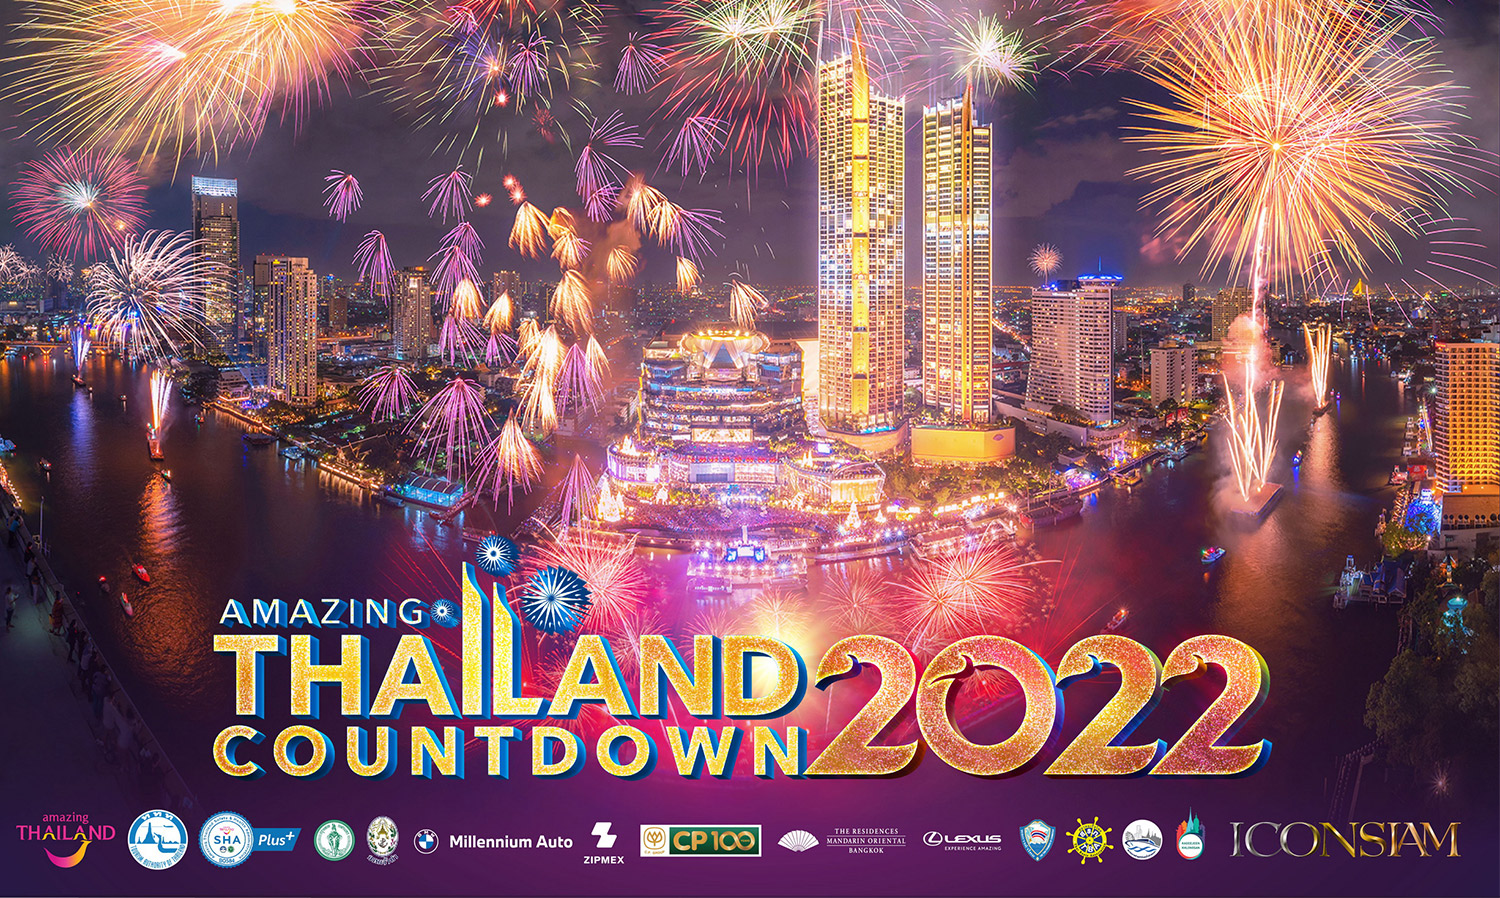 “ไอคอนสยาม” จัดงานเคาท์ดาวน์ระดับโลก  “Amazing Thailand Countdown 2022” 